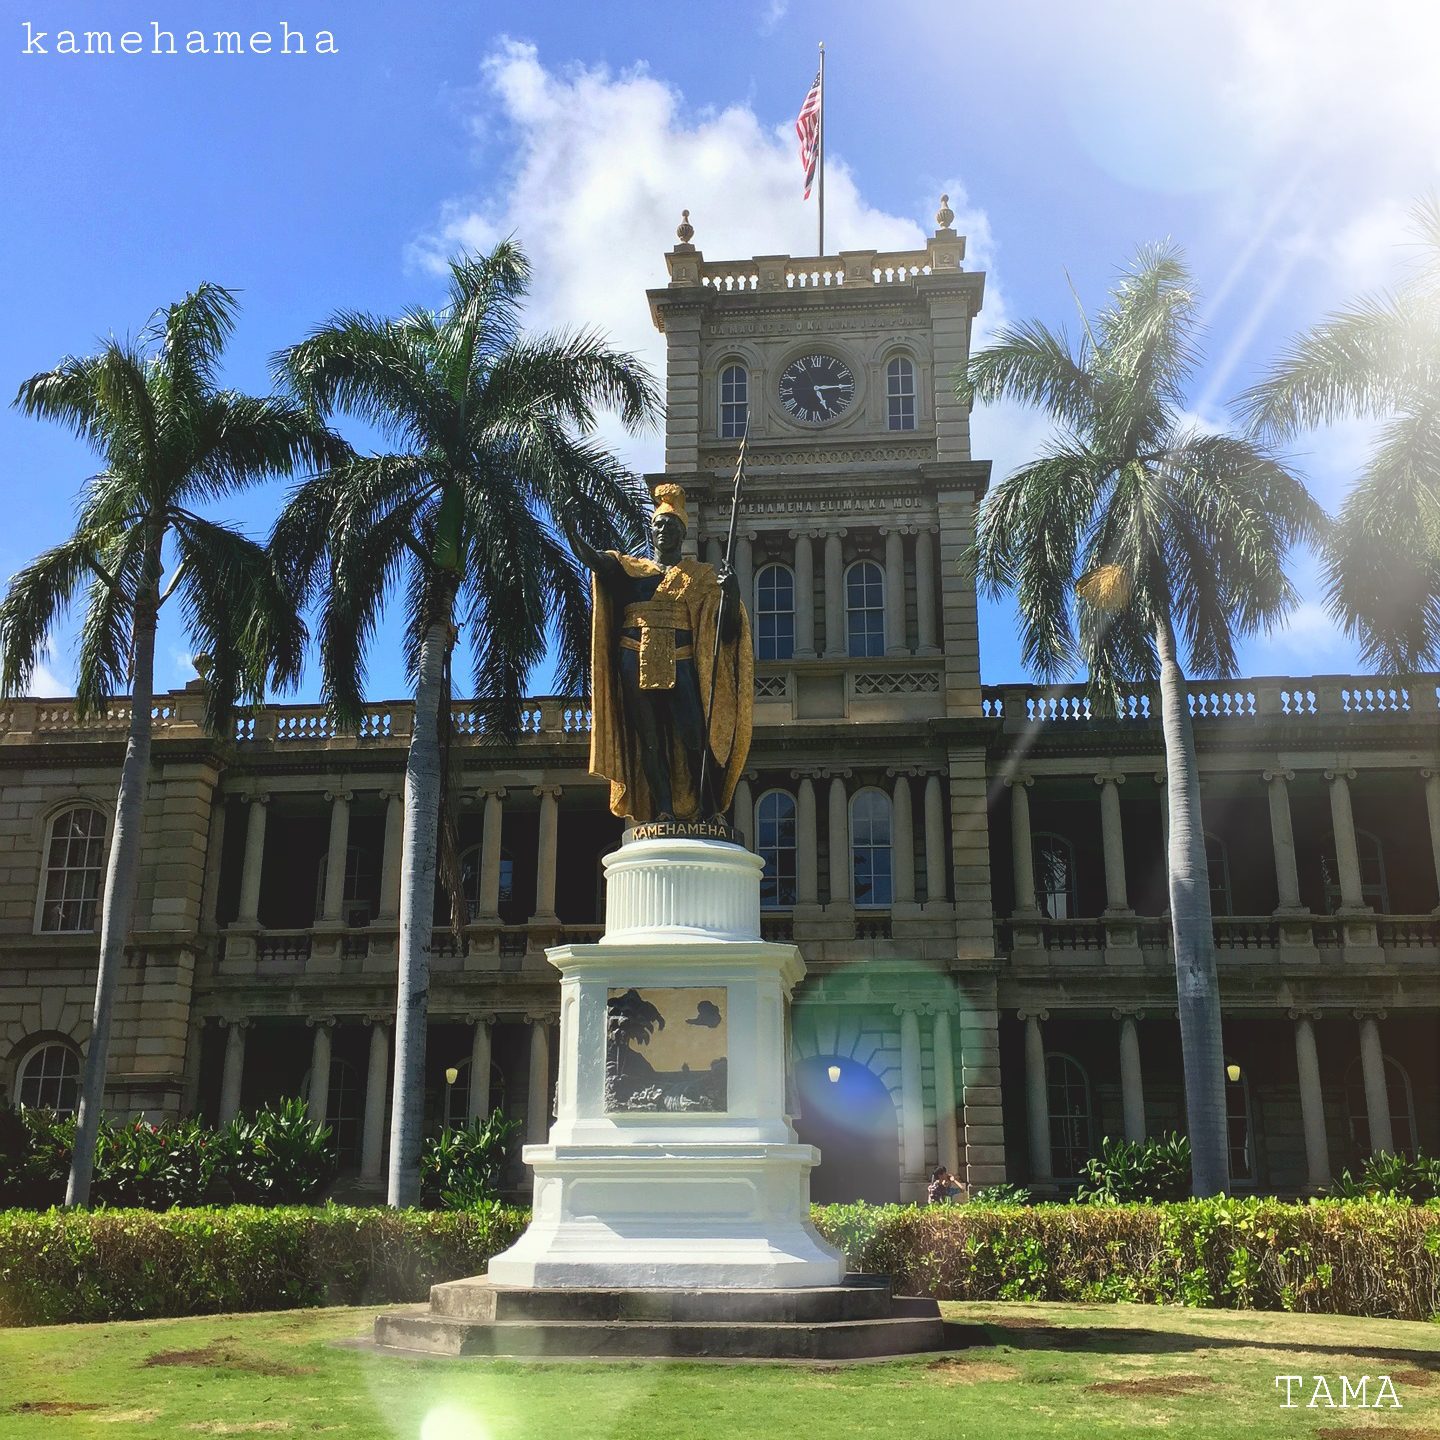 King Kamehameha I Day